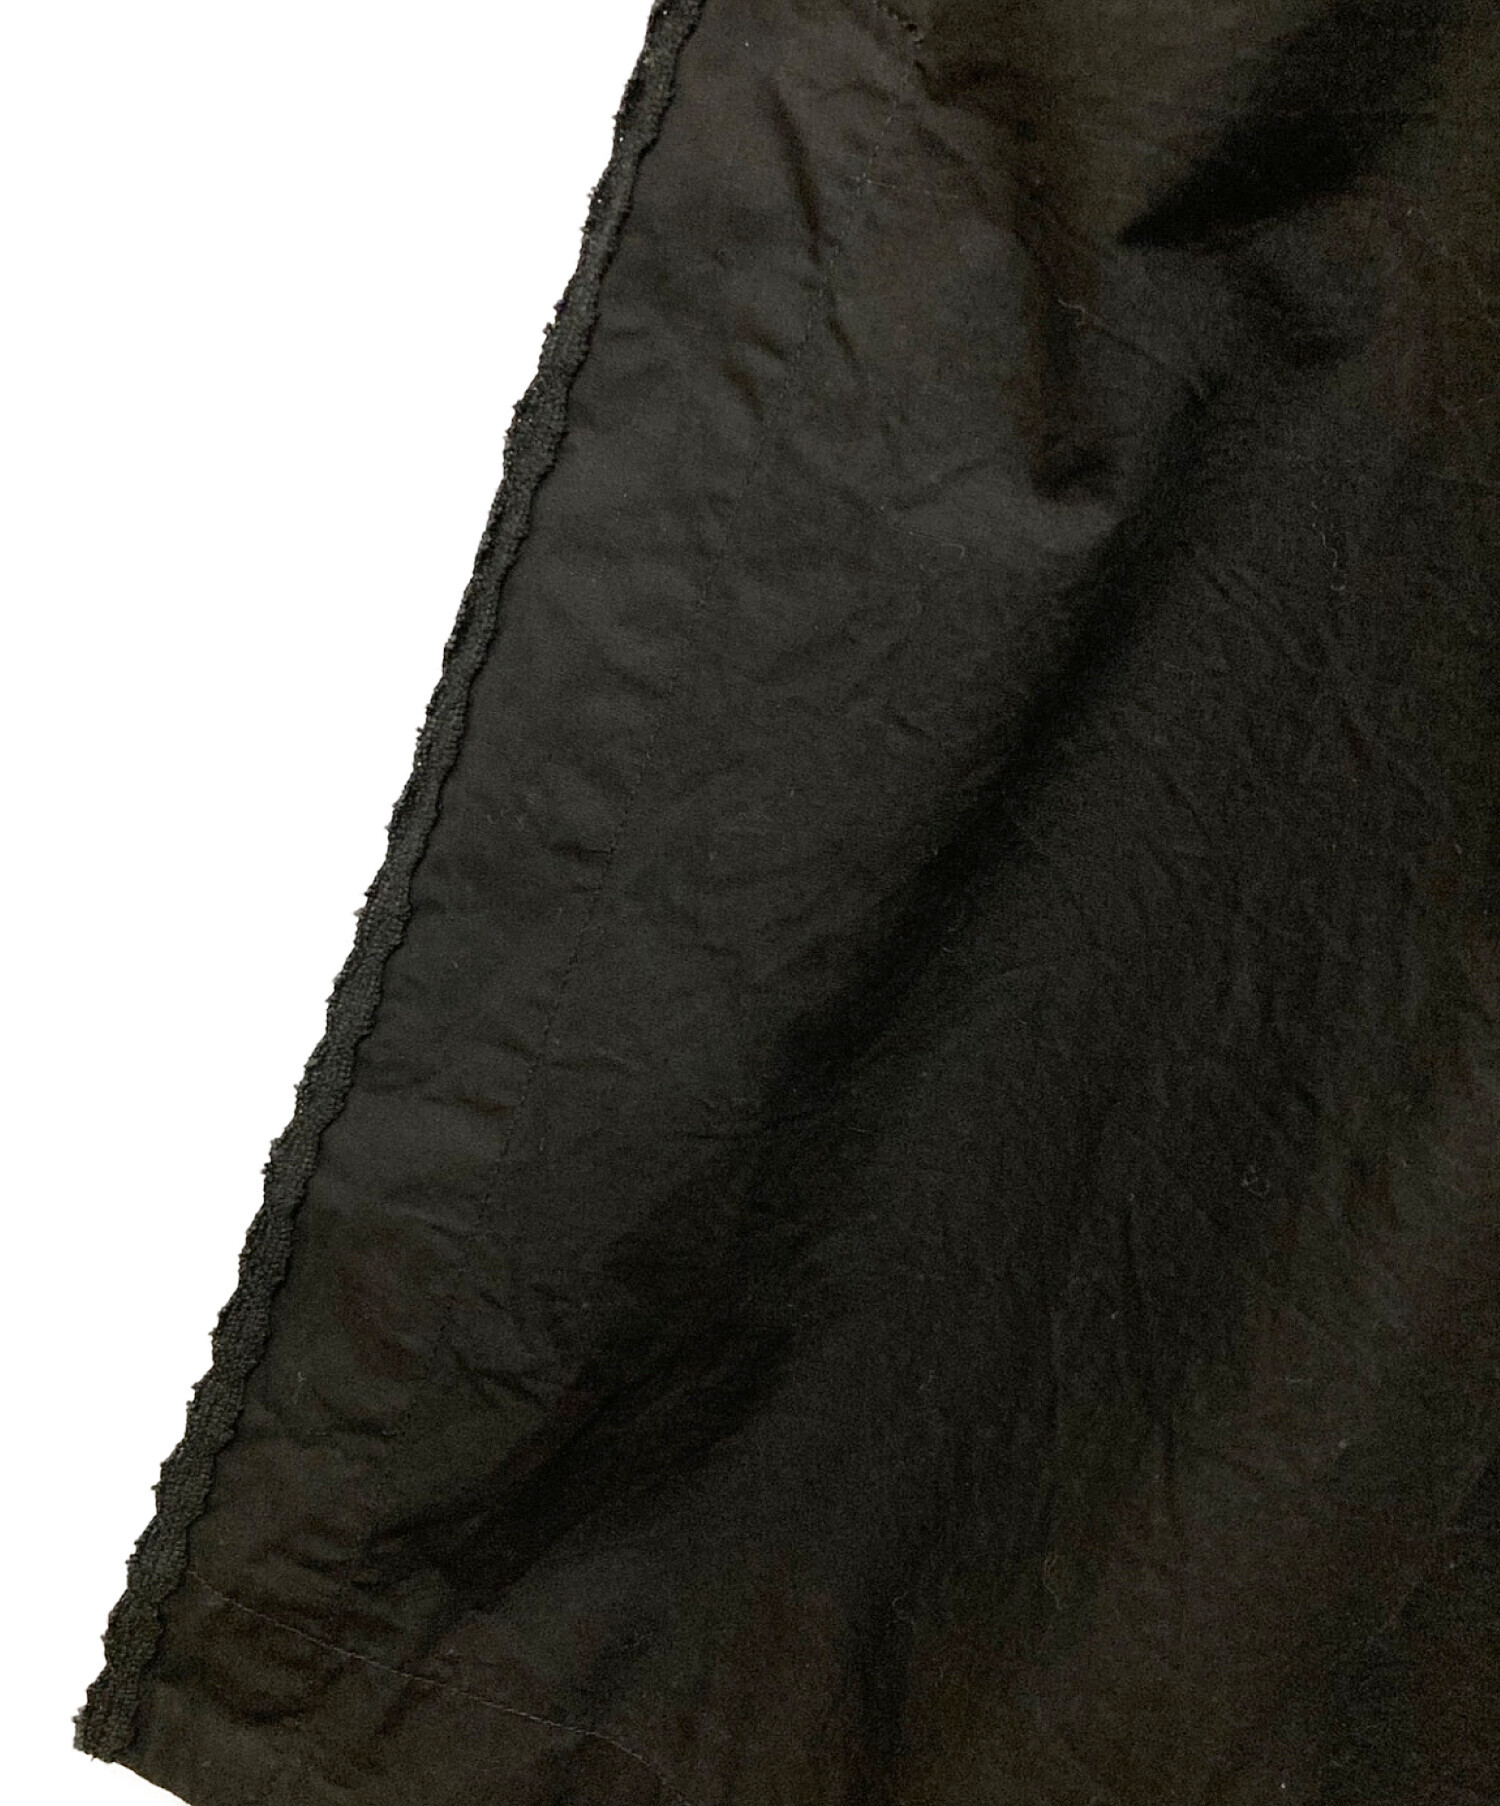 Plage (プラージュ) ethnic lace gown ワンピース ブラック サイズ:36